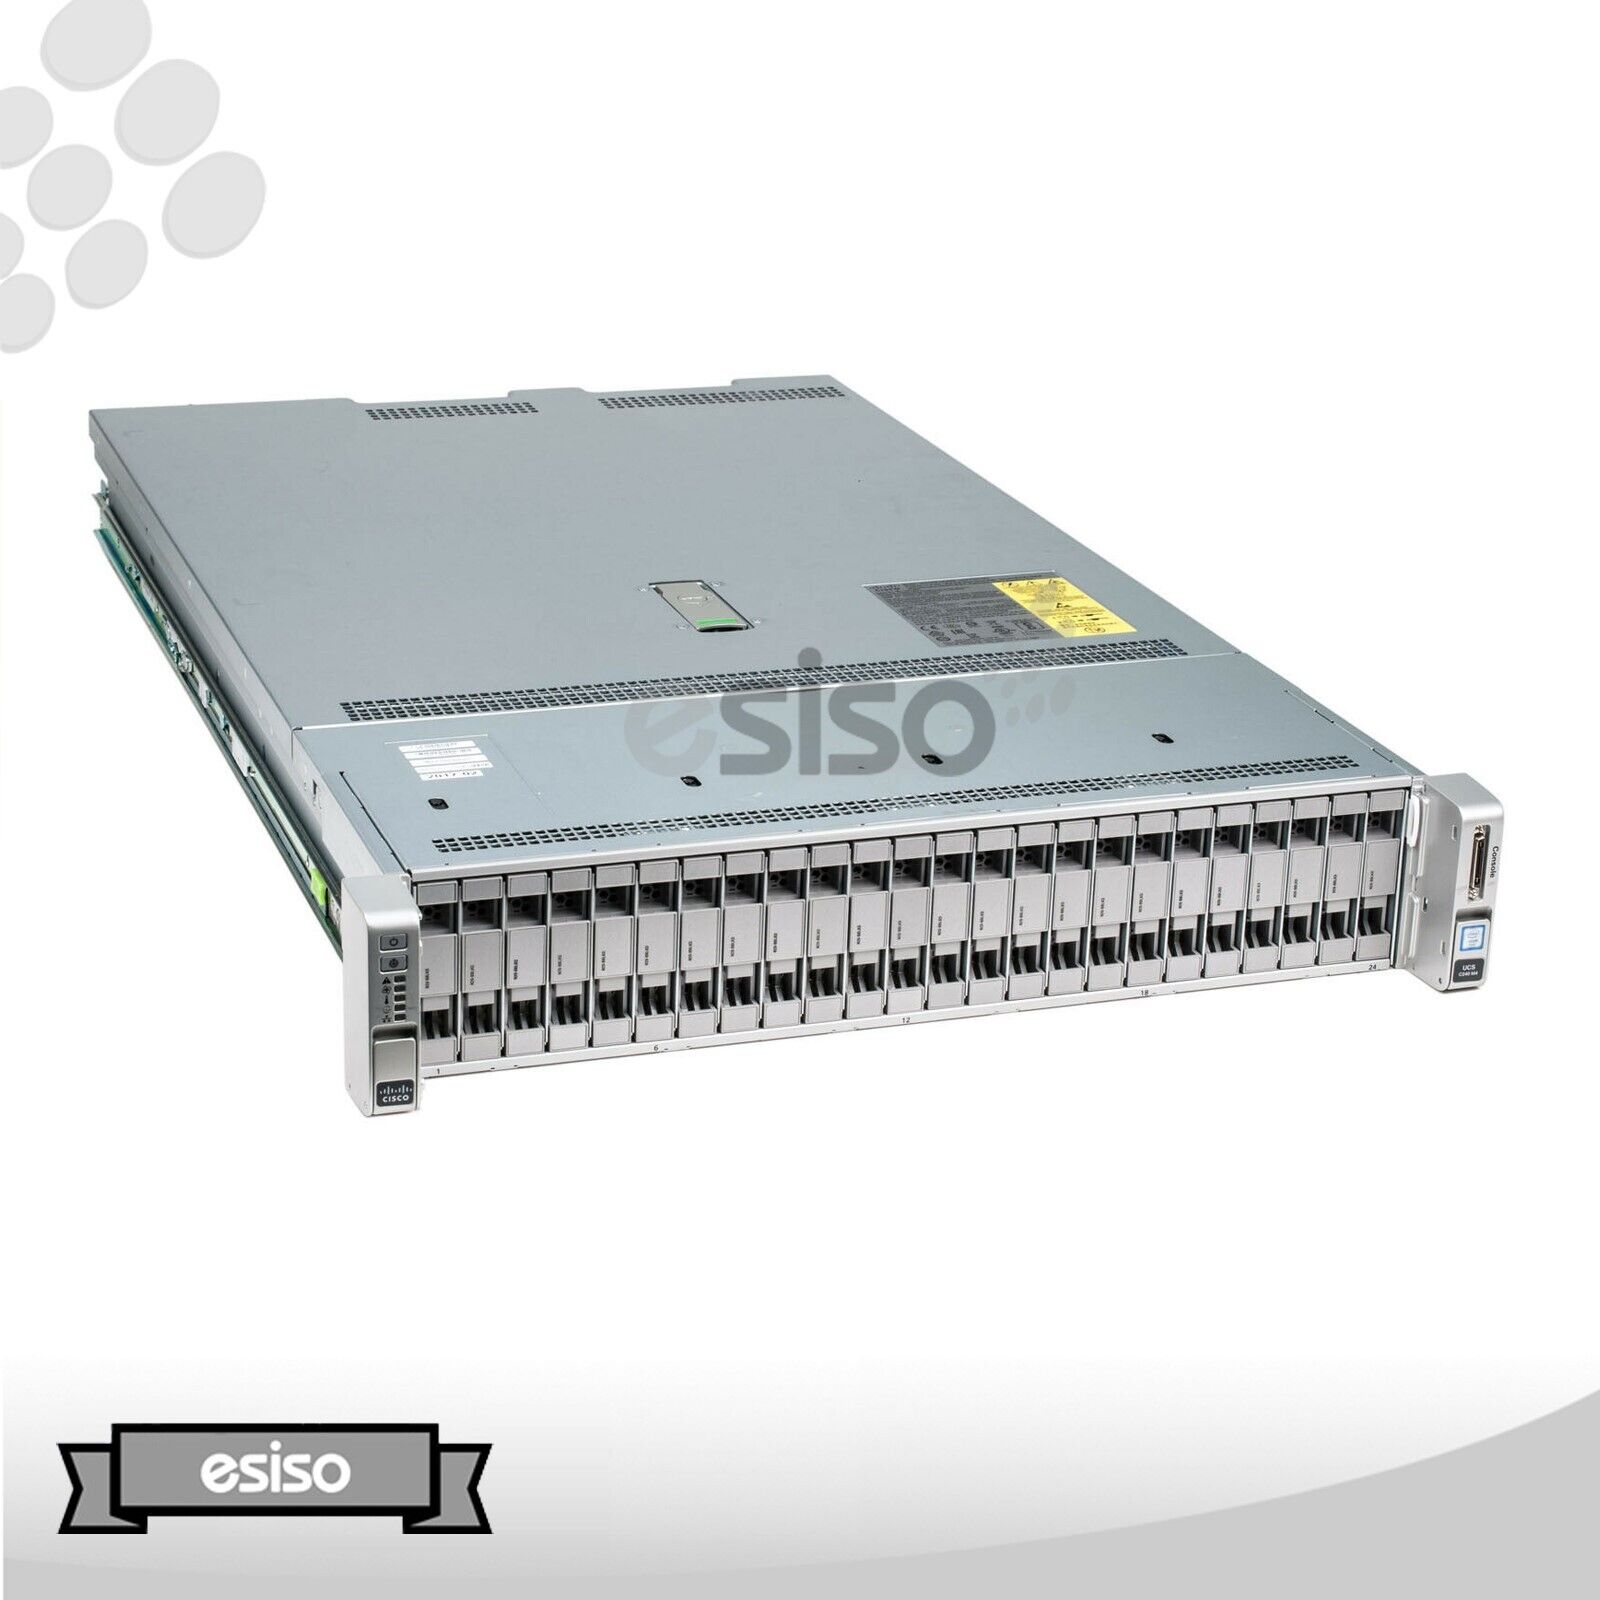 CISCO UCS C240 M4 24SFF 2x 12C E5-2678V3 2.5GHz 256GB RAM 6x TRAY 2x PSU